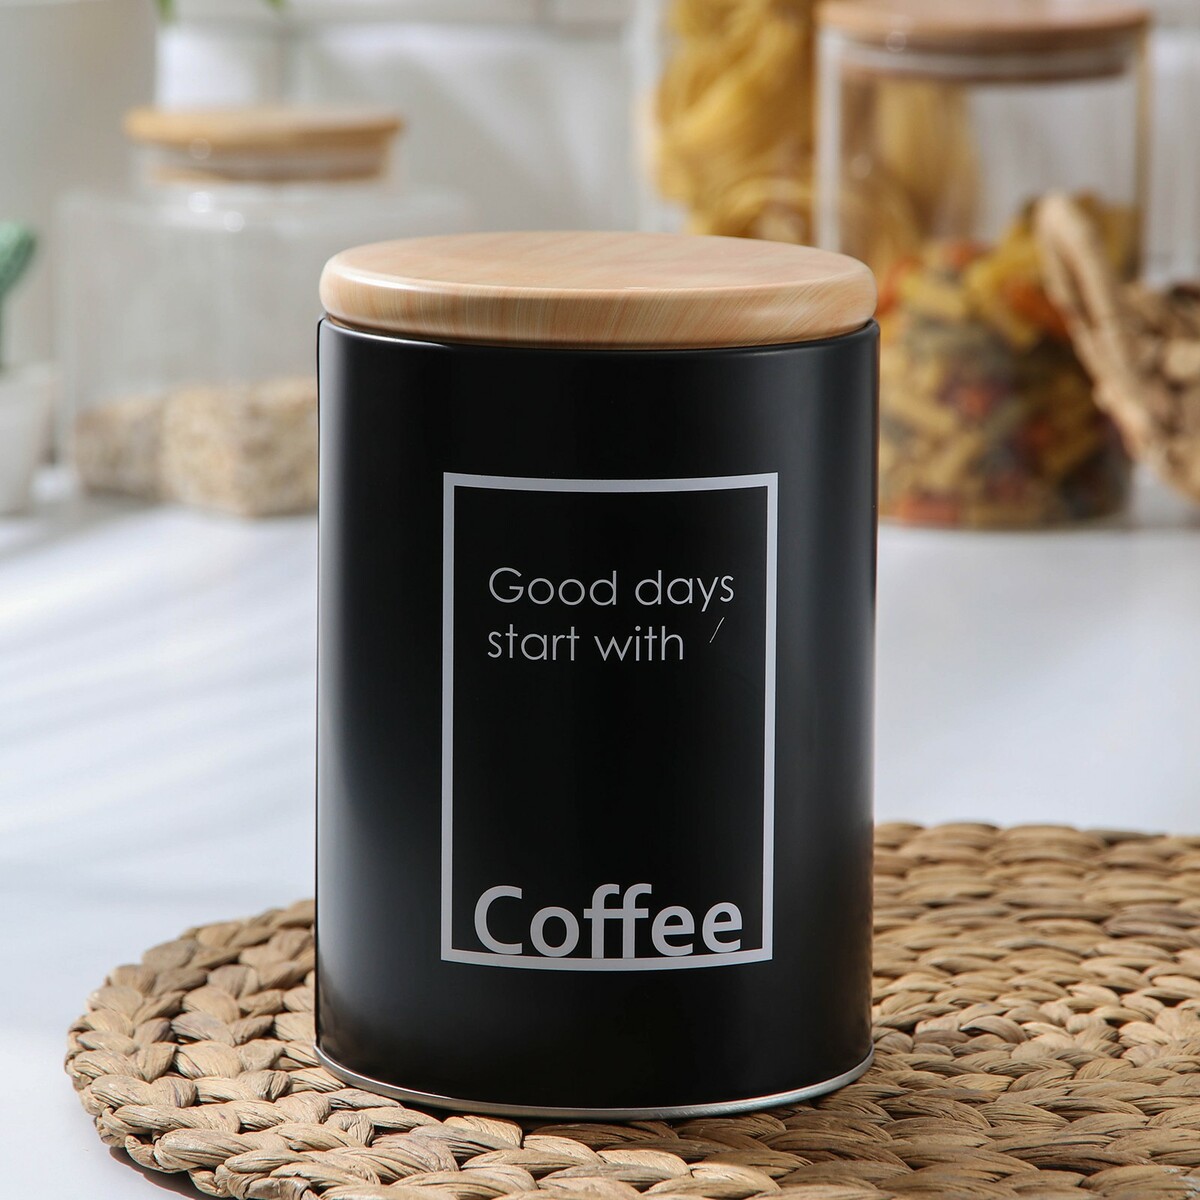 Банка для сыпучих продуктов кофе lifestyle, 11×15,5 см, цвет черный банка для сыпучих продуктов жесть 10 5х10 5х16 см с крышкой y4 6419 серая